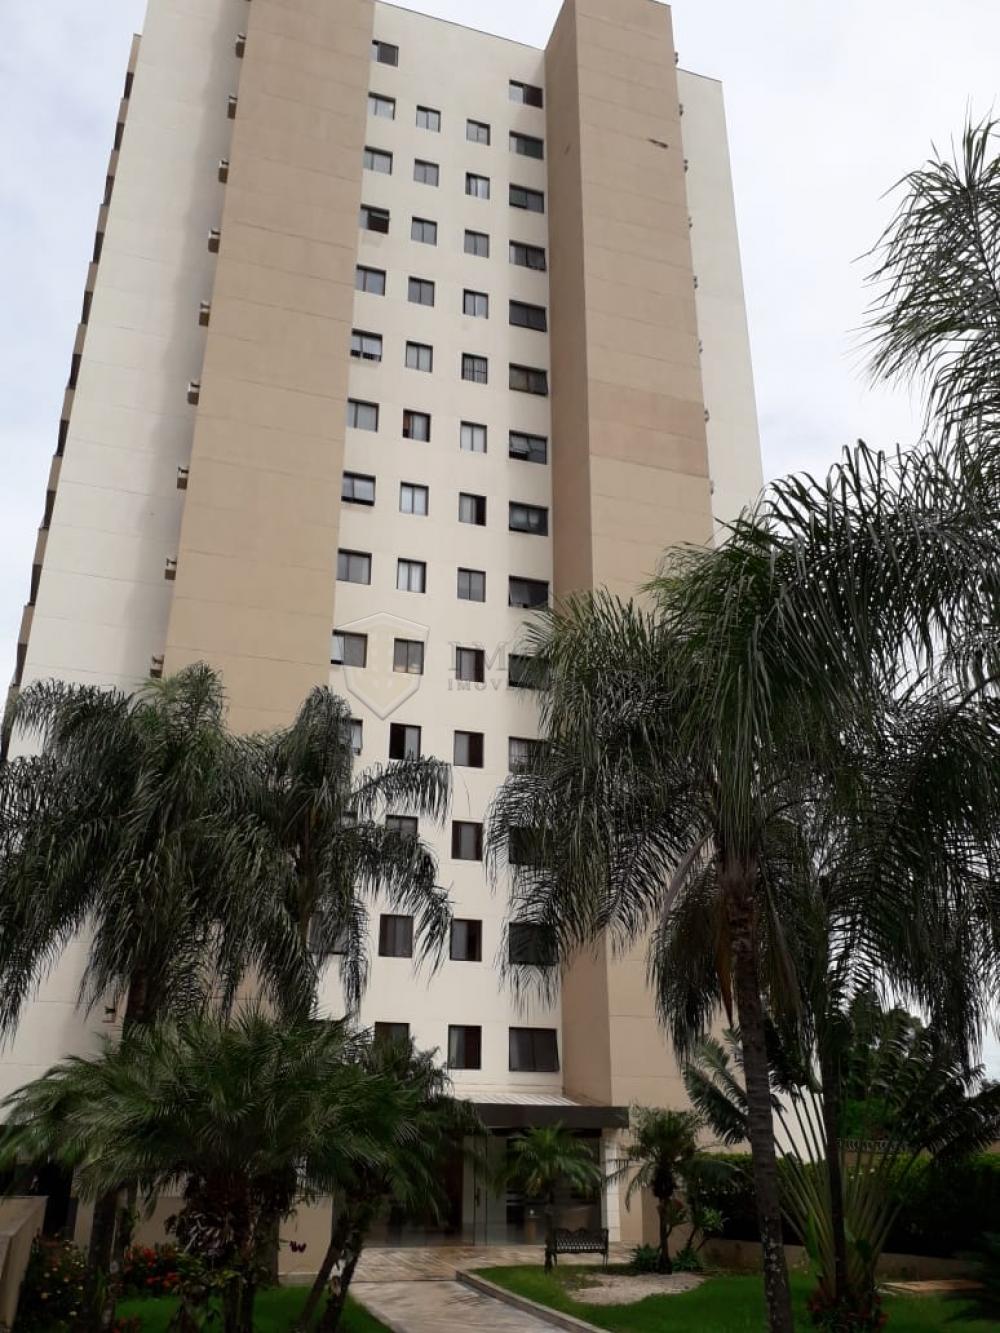 Comprar Apartamento / Padrão em Ribeirão Preto R$ 480.000,00 - Foto 3